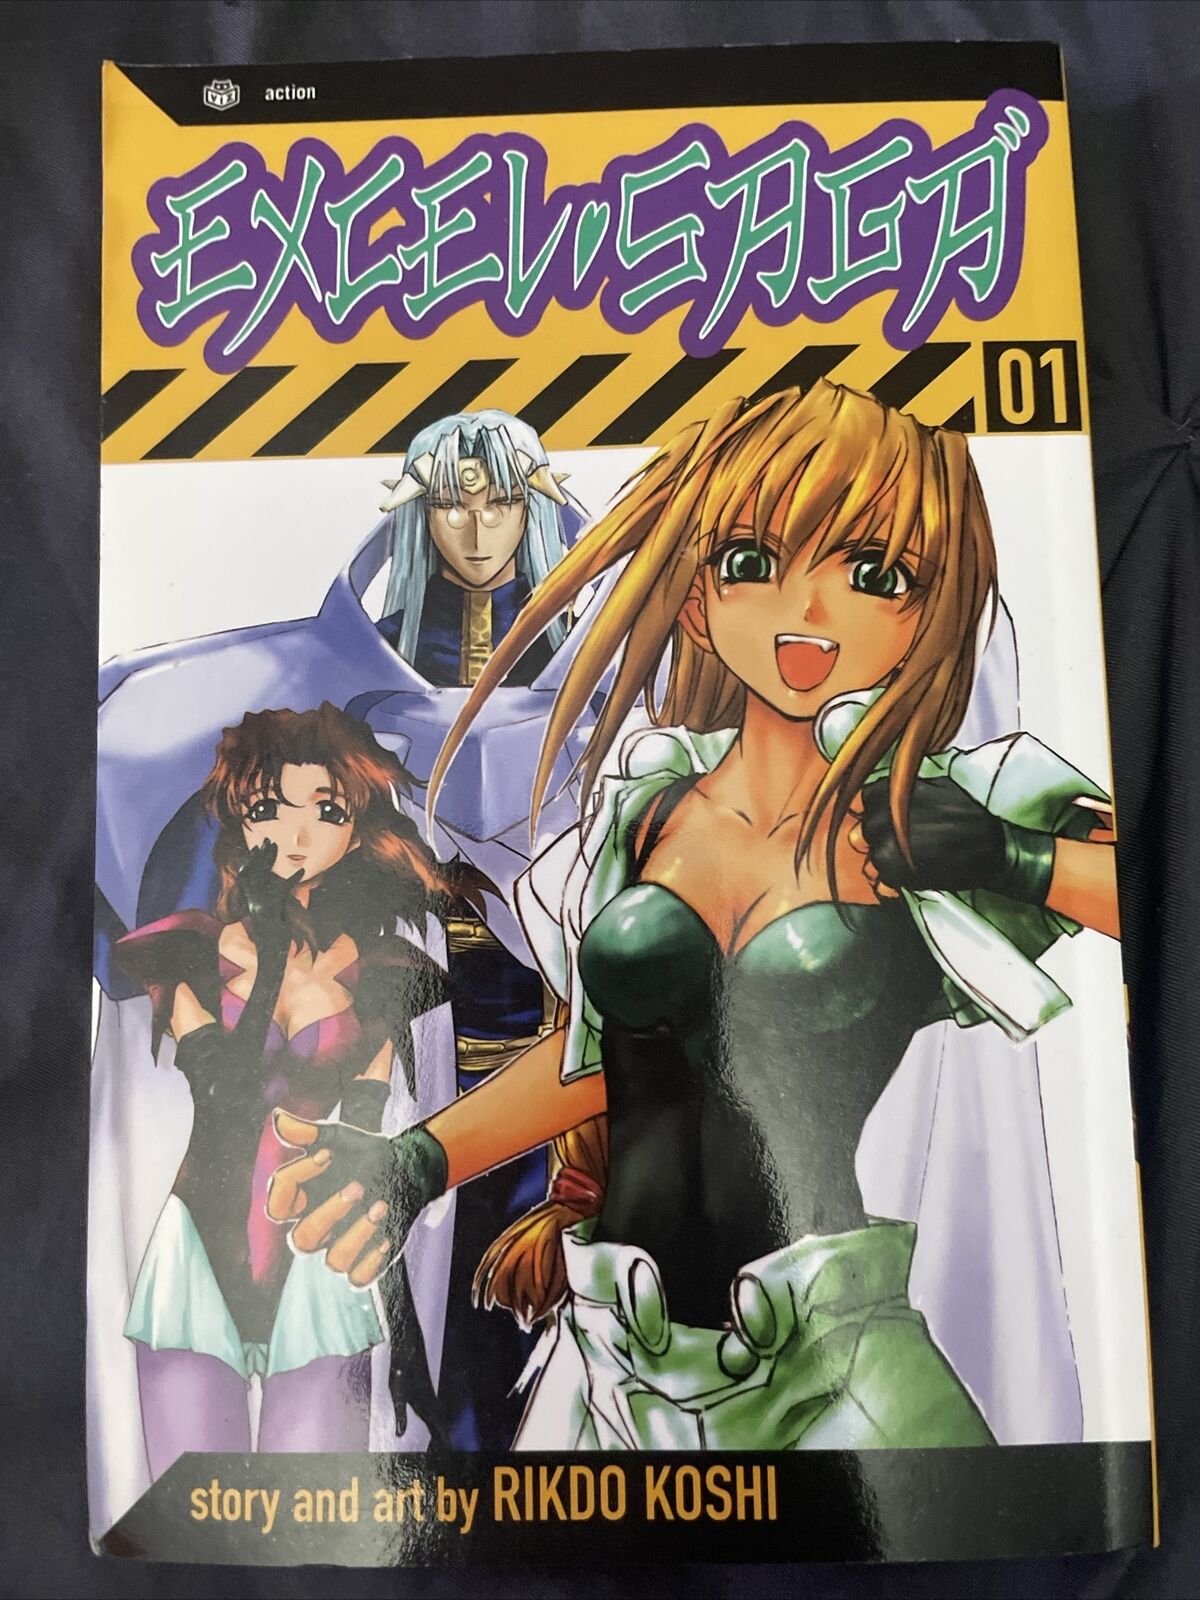 Excel Saga 01 Manga Rikdo Koshi Action First Printing July 2003 1997 Viz Novels